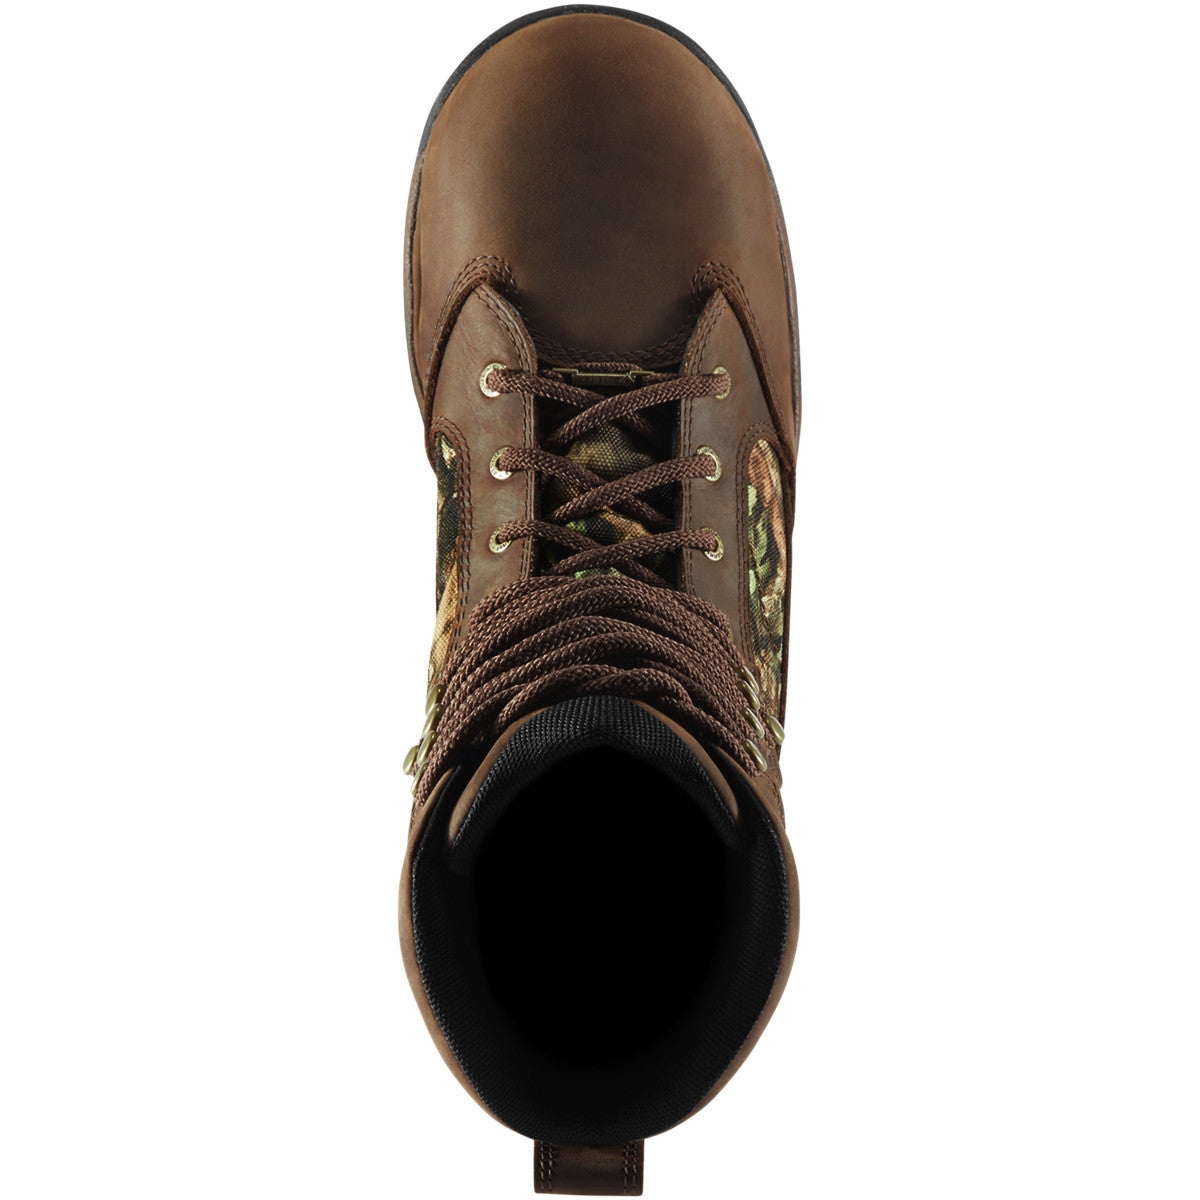 Danner Men's Pronghorn 8" WP Ins Hunt Boot - Mossy Oak - 41342  - Overlook Boots